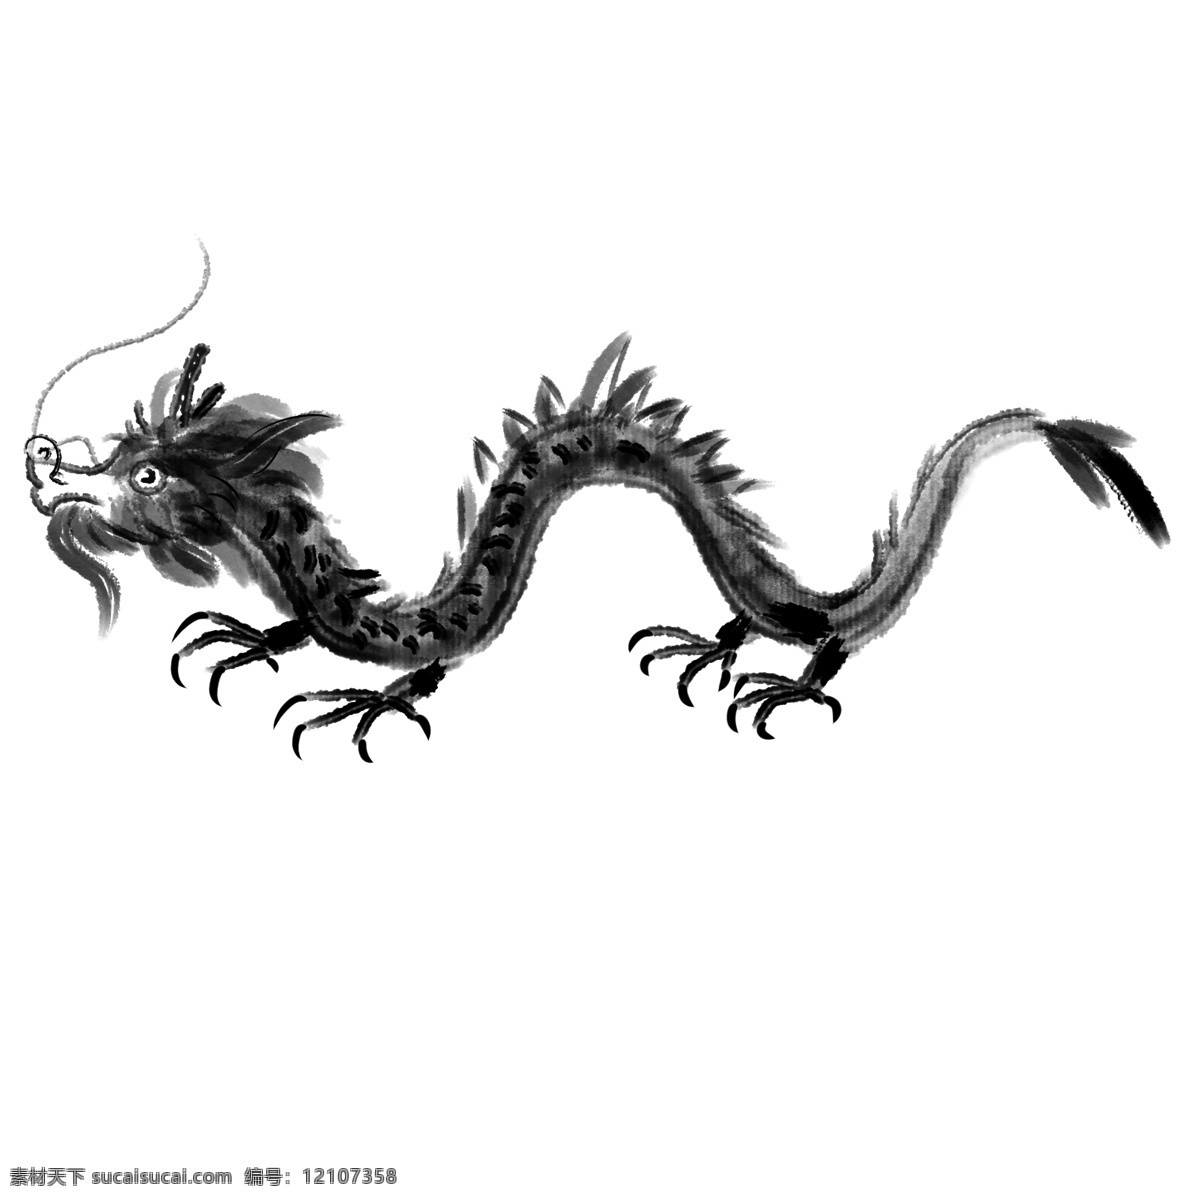 黑色 中式 水墨 龙 效果图 插画 卡通 手绘 中国风中式 水墨龙 中国风动物 手绘动物 黑色动物 爬行动物